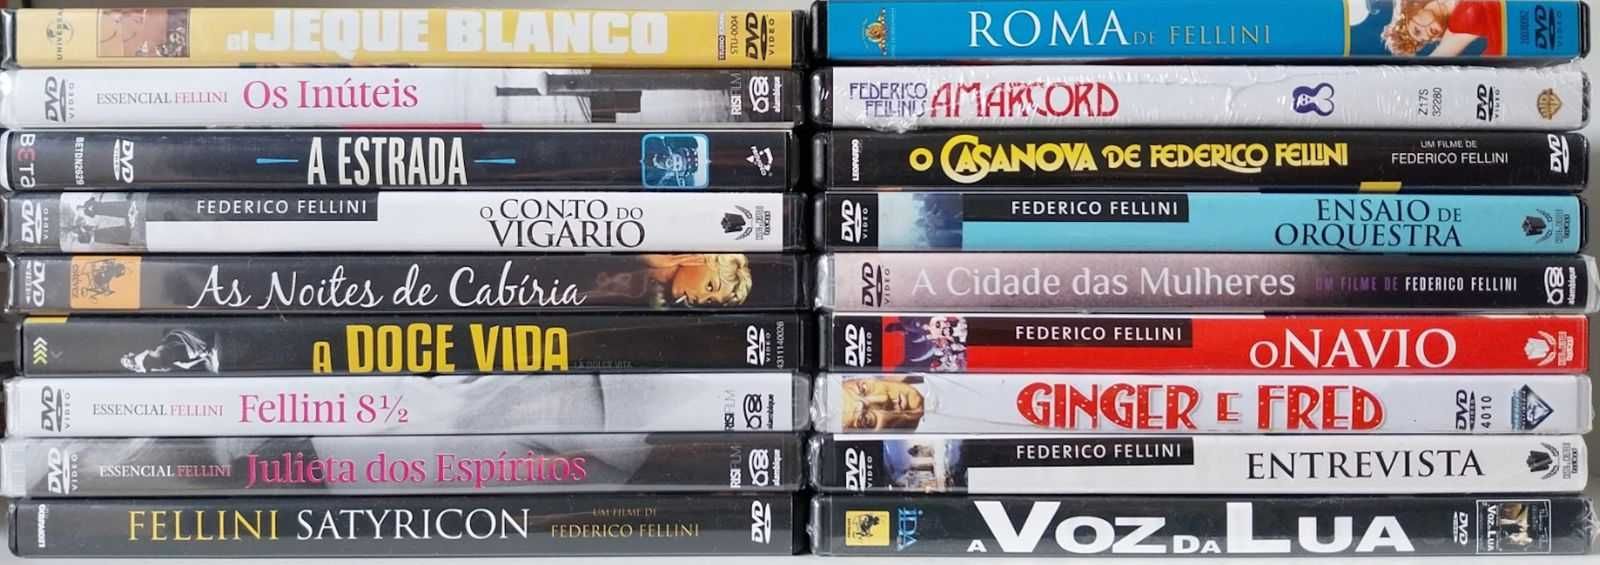 DVDs de filmes de Federico Fellini